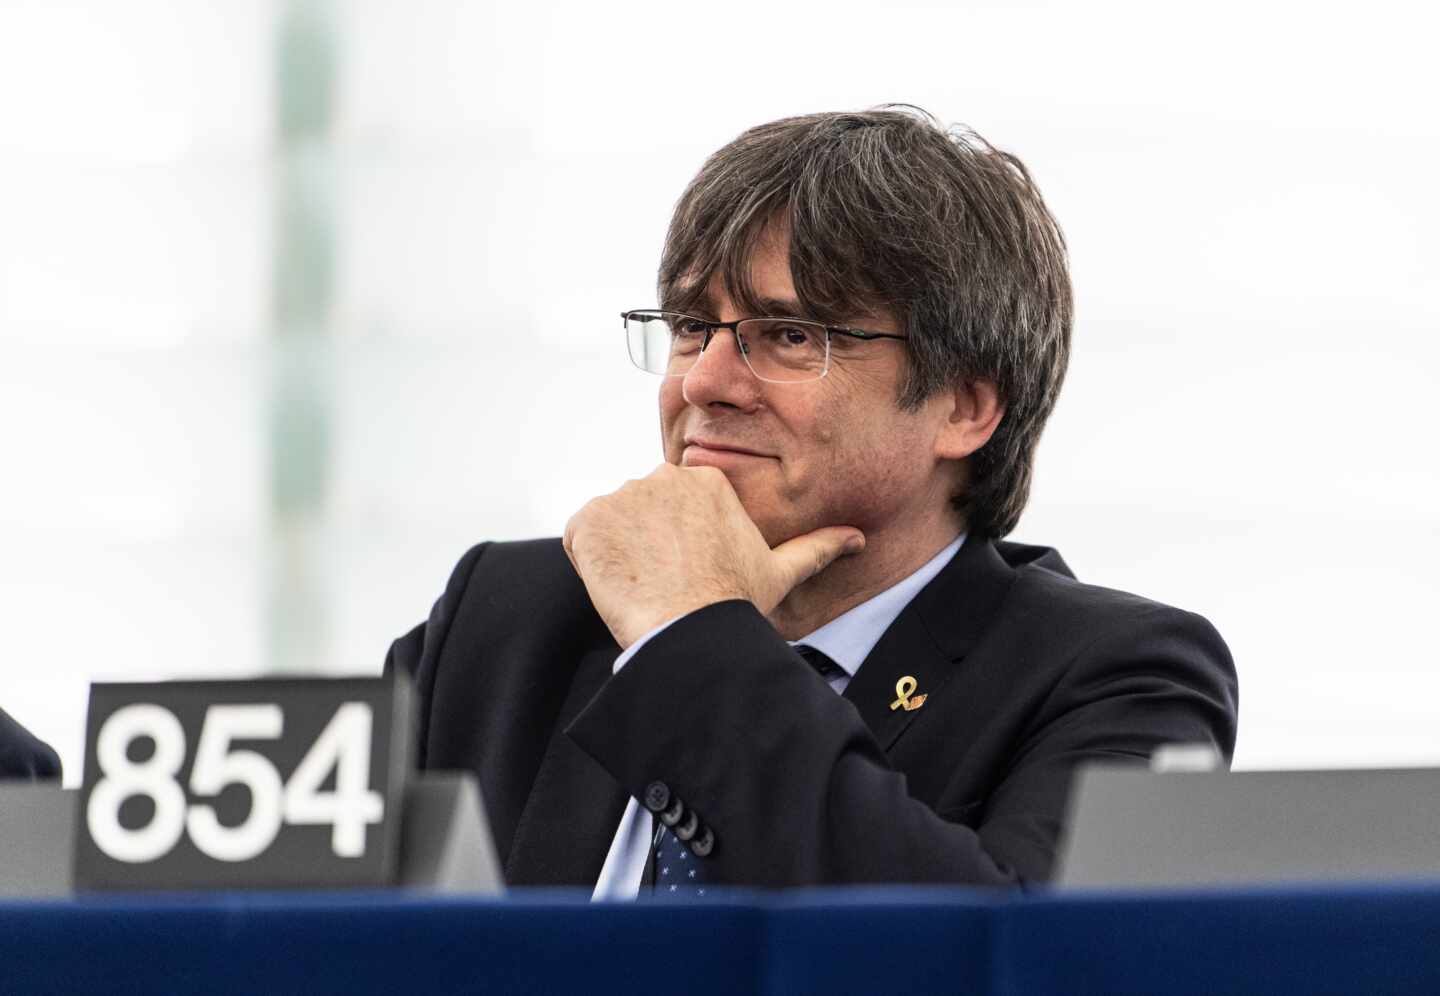 Torra y Puigdemont presionan la mesa de negociación con la exigencia del relator